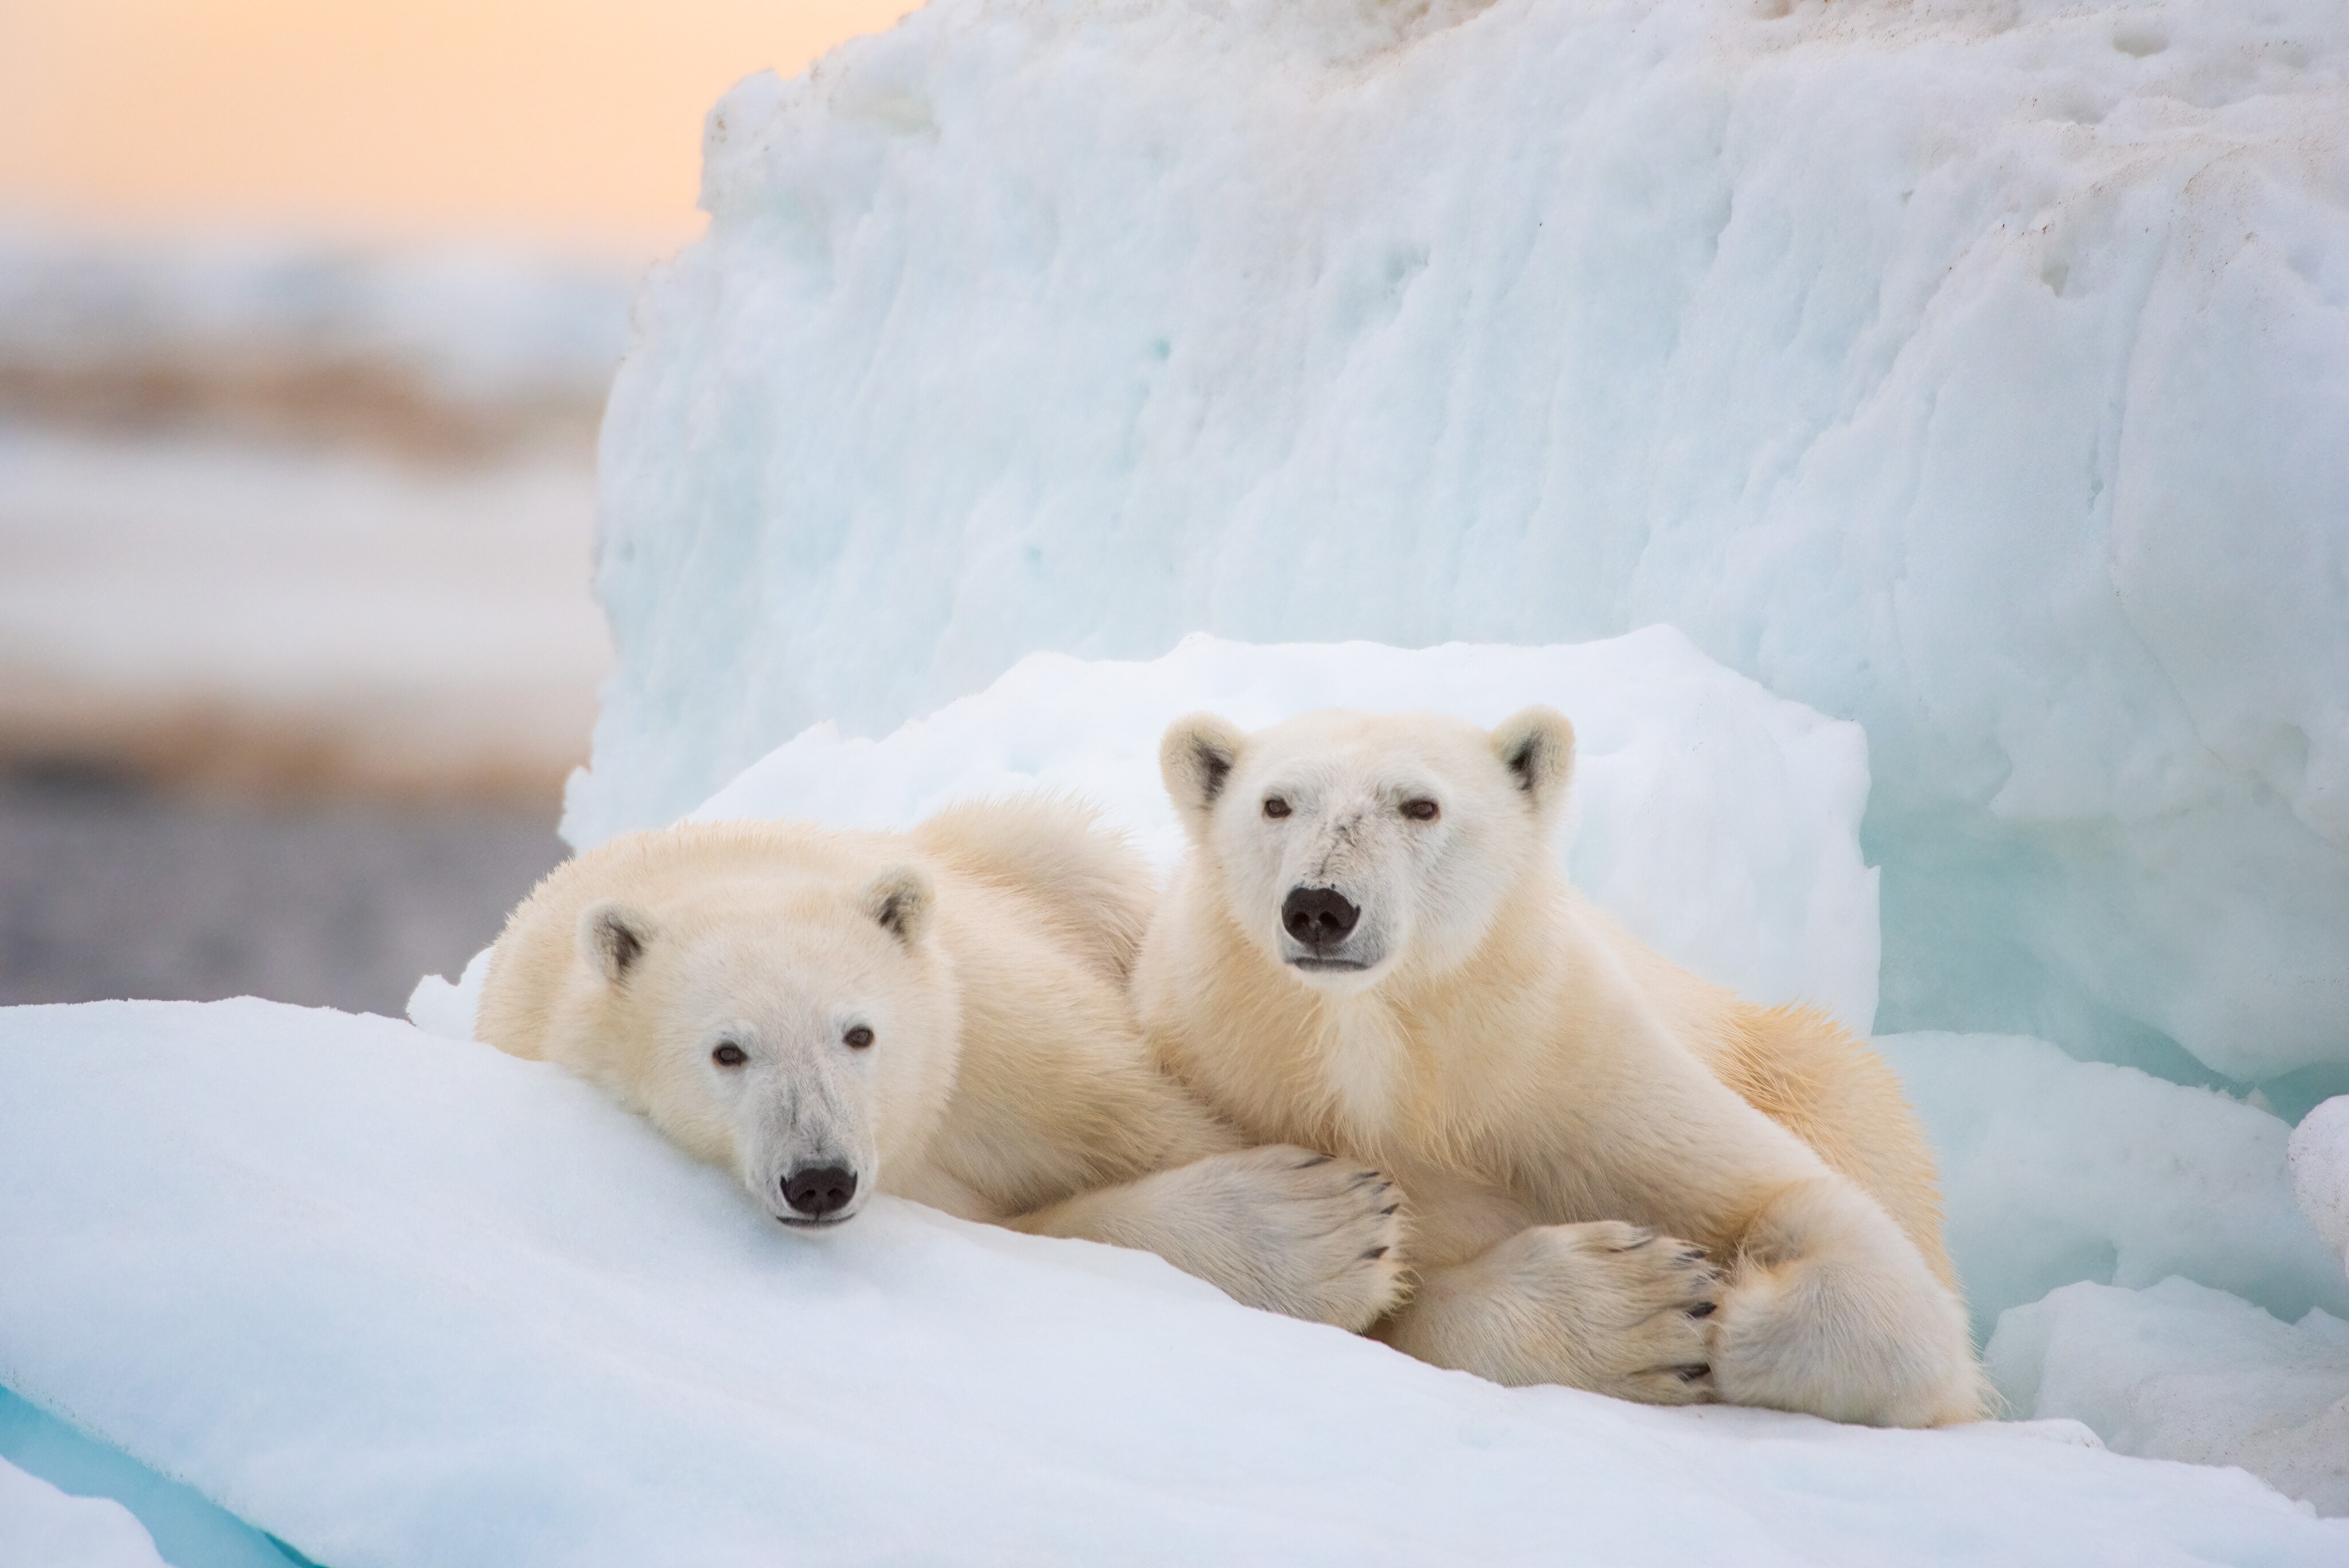 Confira o trailer de “A Ursa Polar”, o novo documentário da Disneynature